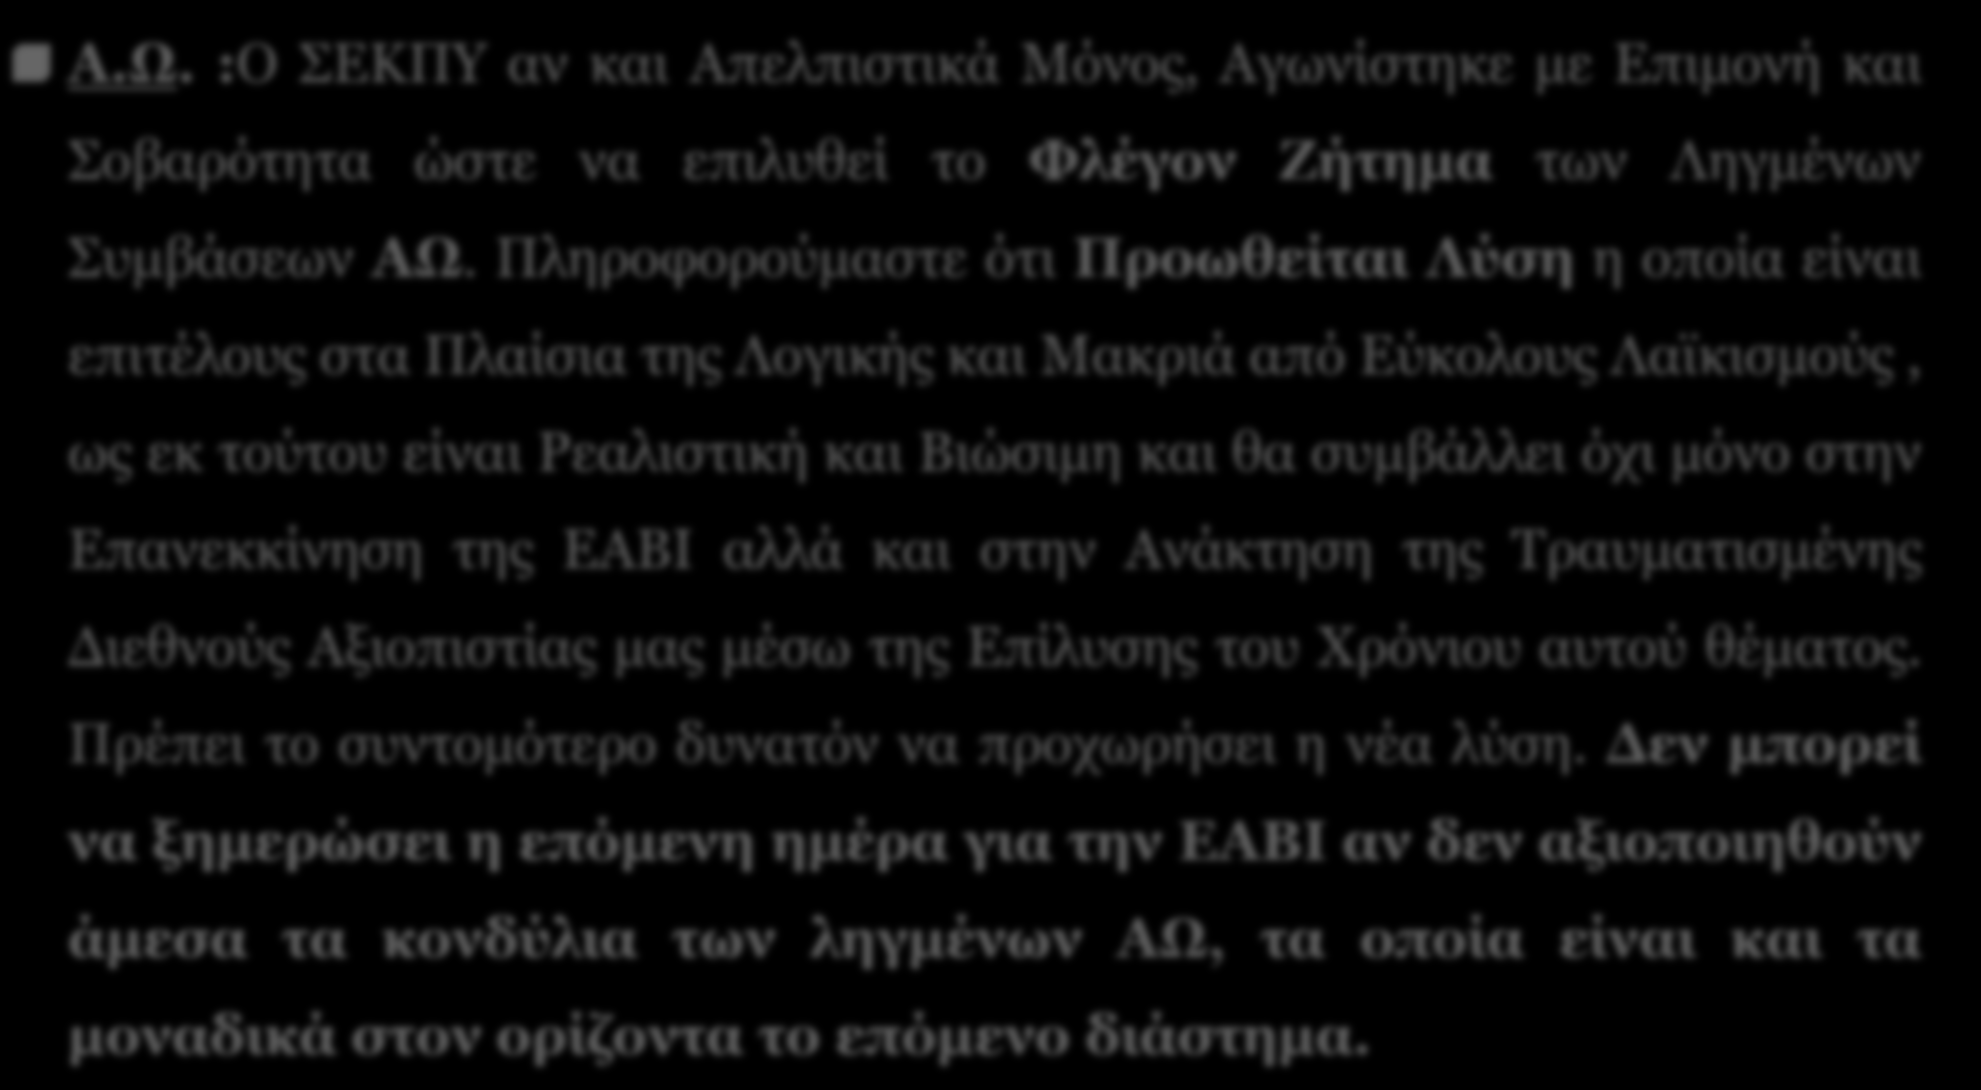 ΣΕΚΠΥ - Σύνδεσμος Ελλήνων Κατασκευαστών Αμυντικού Υλικού - SEKPY 12 ΕΑΒΙ Παρούσα Κατάσταση (2) Α.Ω.